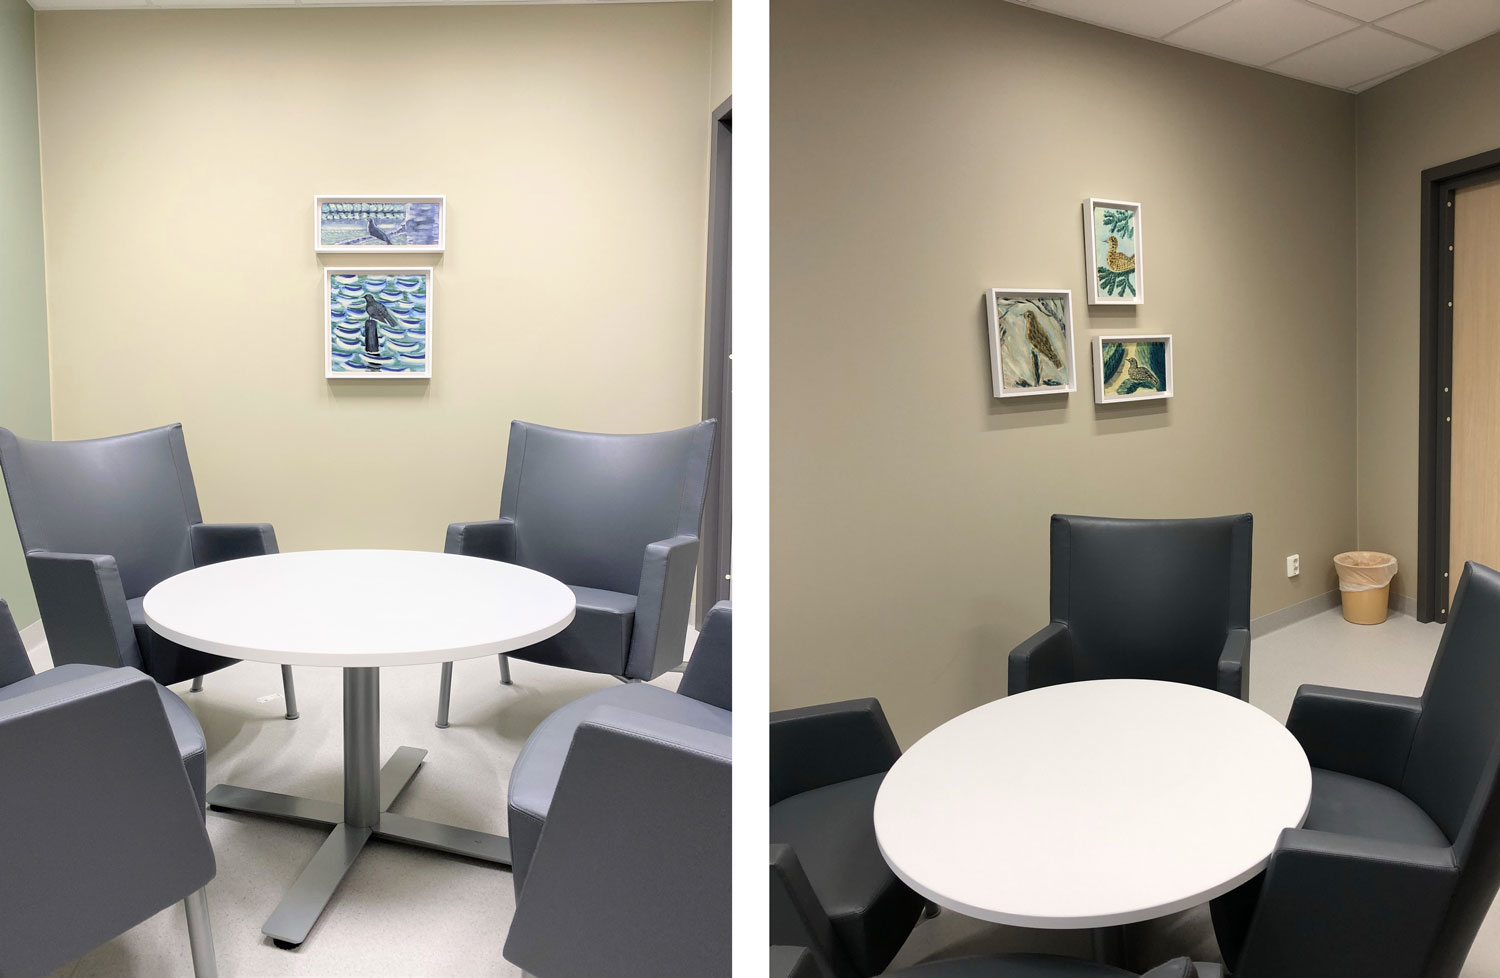 Två foton från två samtalsrum. I båda rummen står fåtöljer runt ett runt vitt bord. På väggen bakom syns målningar av fåglar. På det vänstra fotot två målningar och på den högra tre.